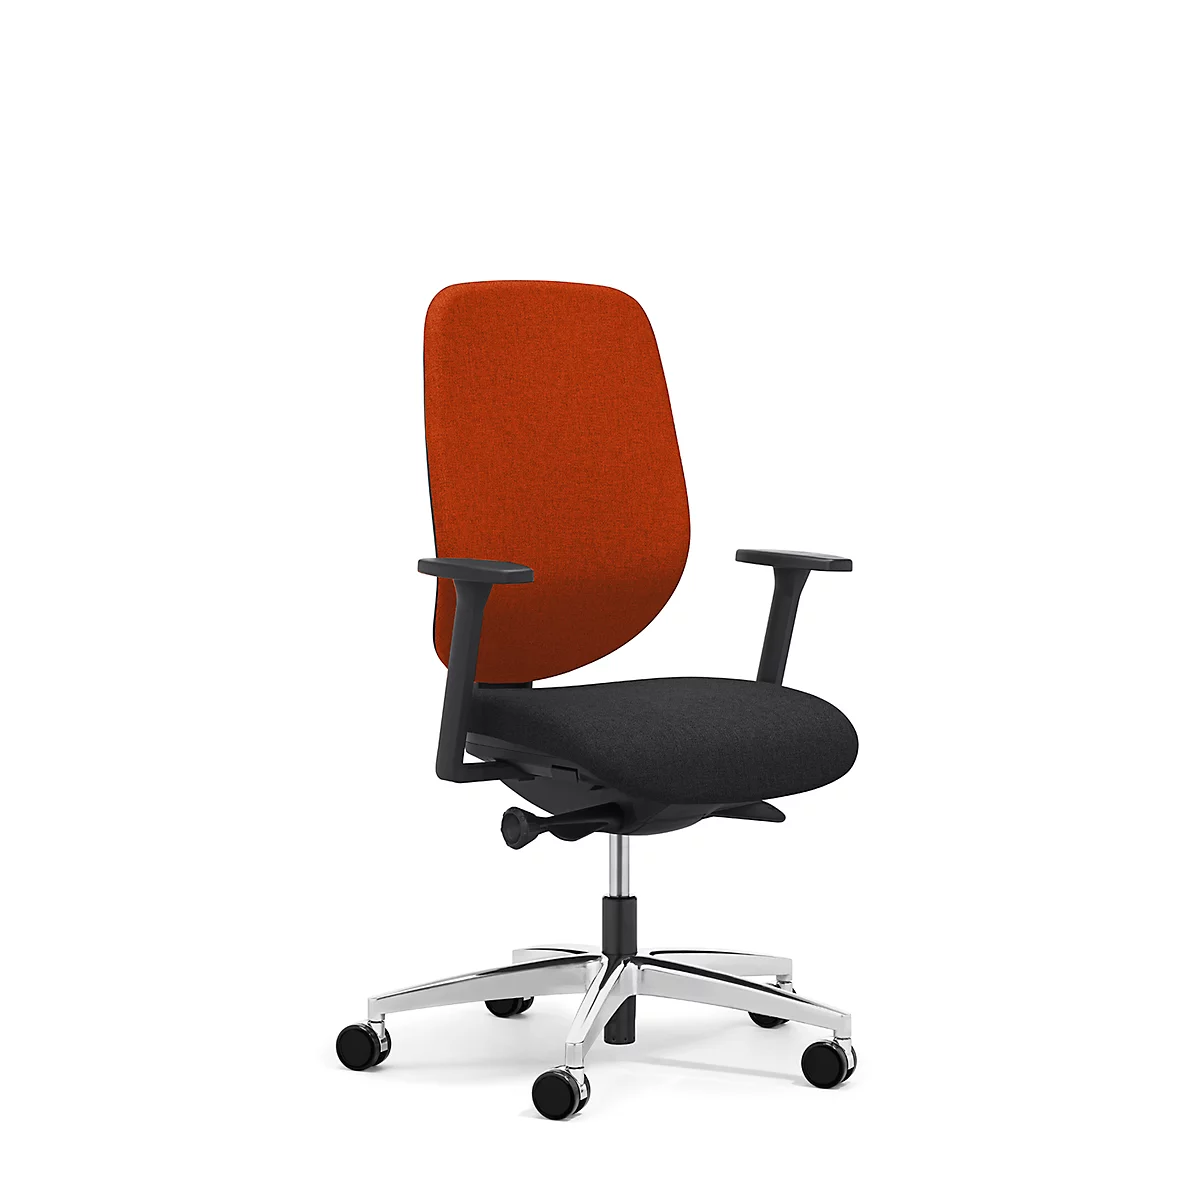 Giroflex Bürostuhl 353, mit Armlehnen, Auto-Synchronmechanik, Muldensitz, orange/schwarz/alusilber